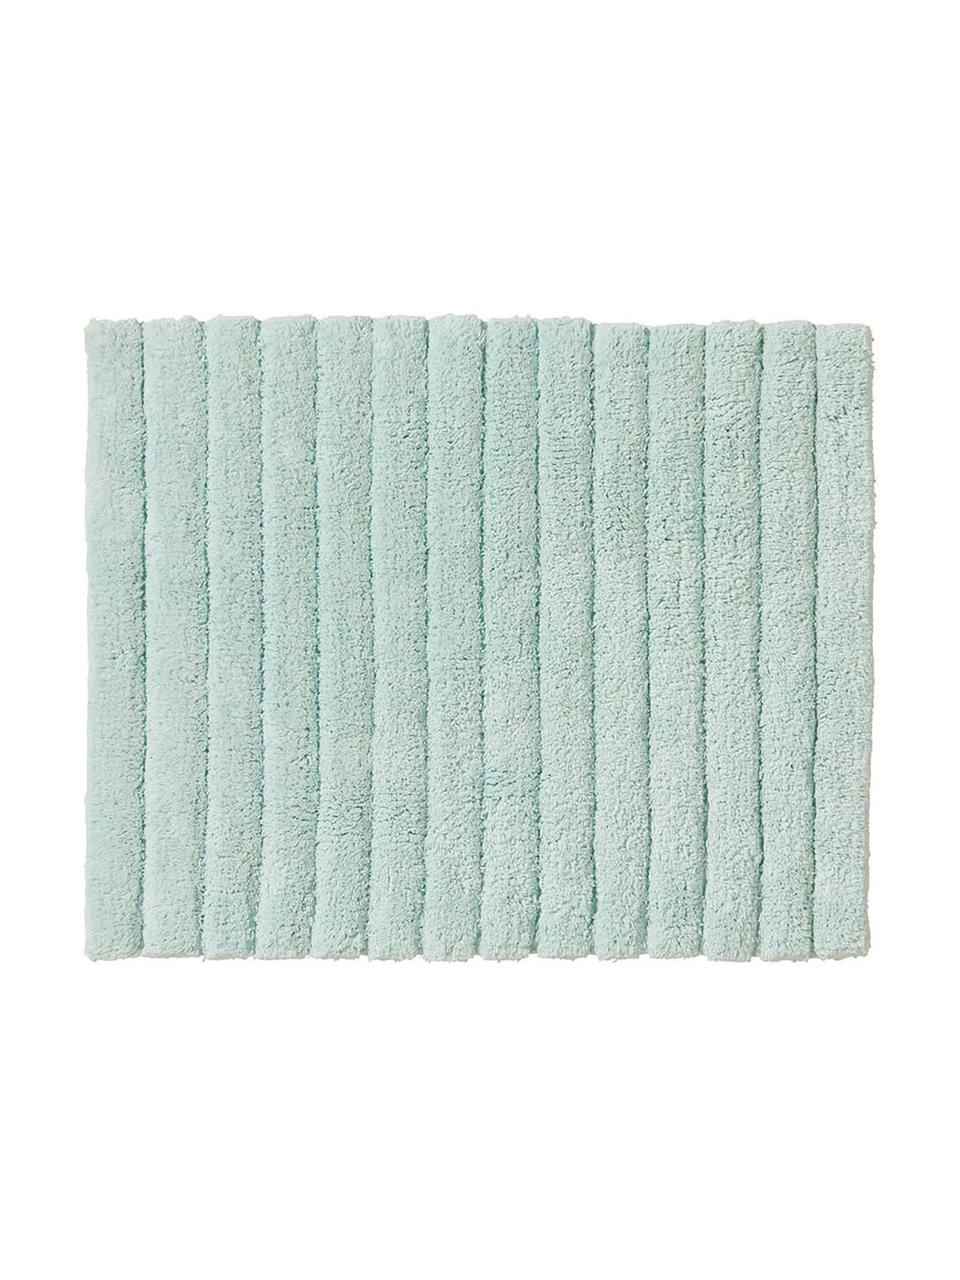 Fluffy badmat Board in mintgroen, Katoen, zware kwaliteit, 1900 g/m², Mintgroen, 50 x 60 cm